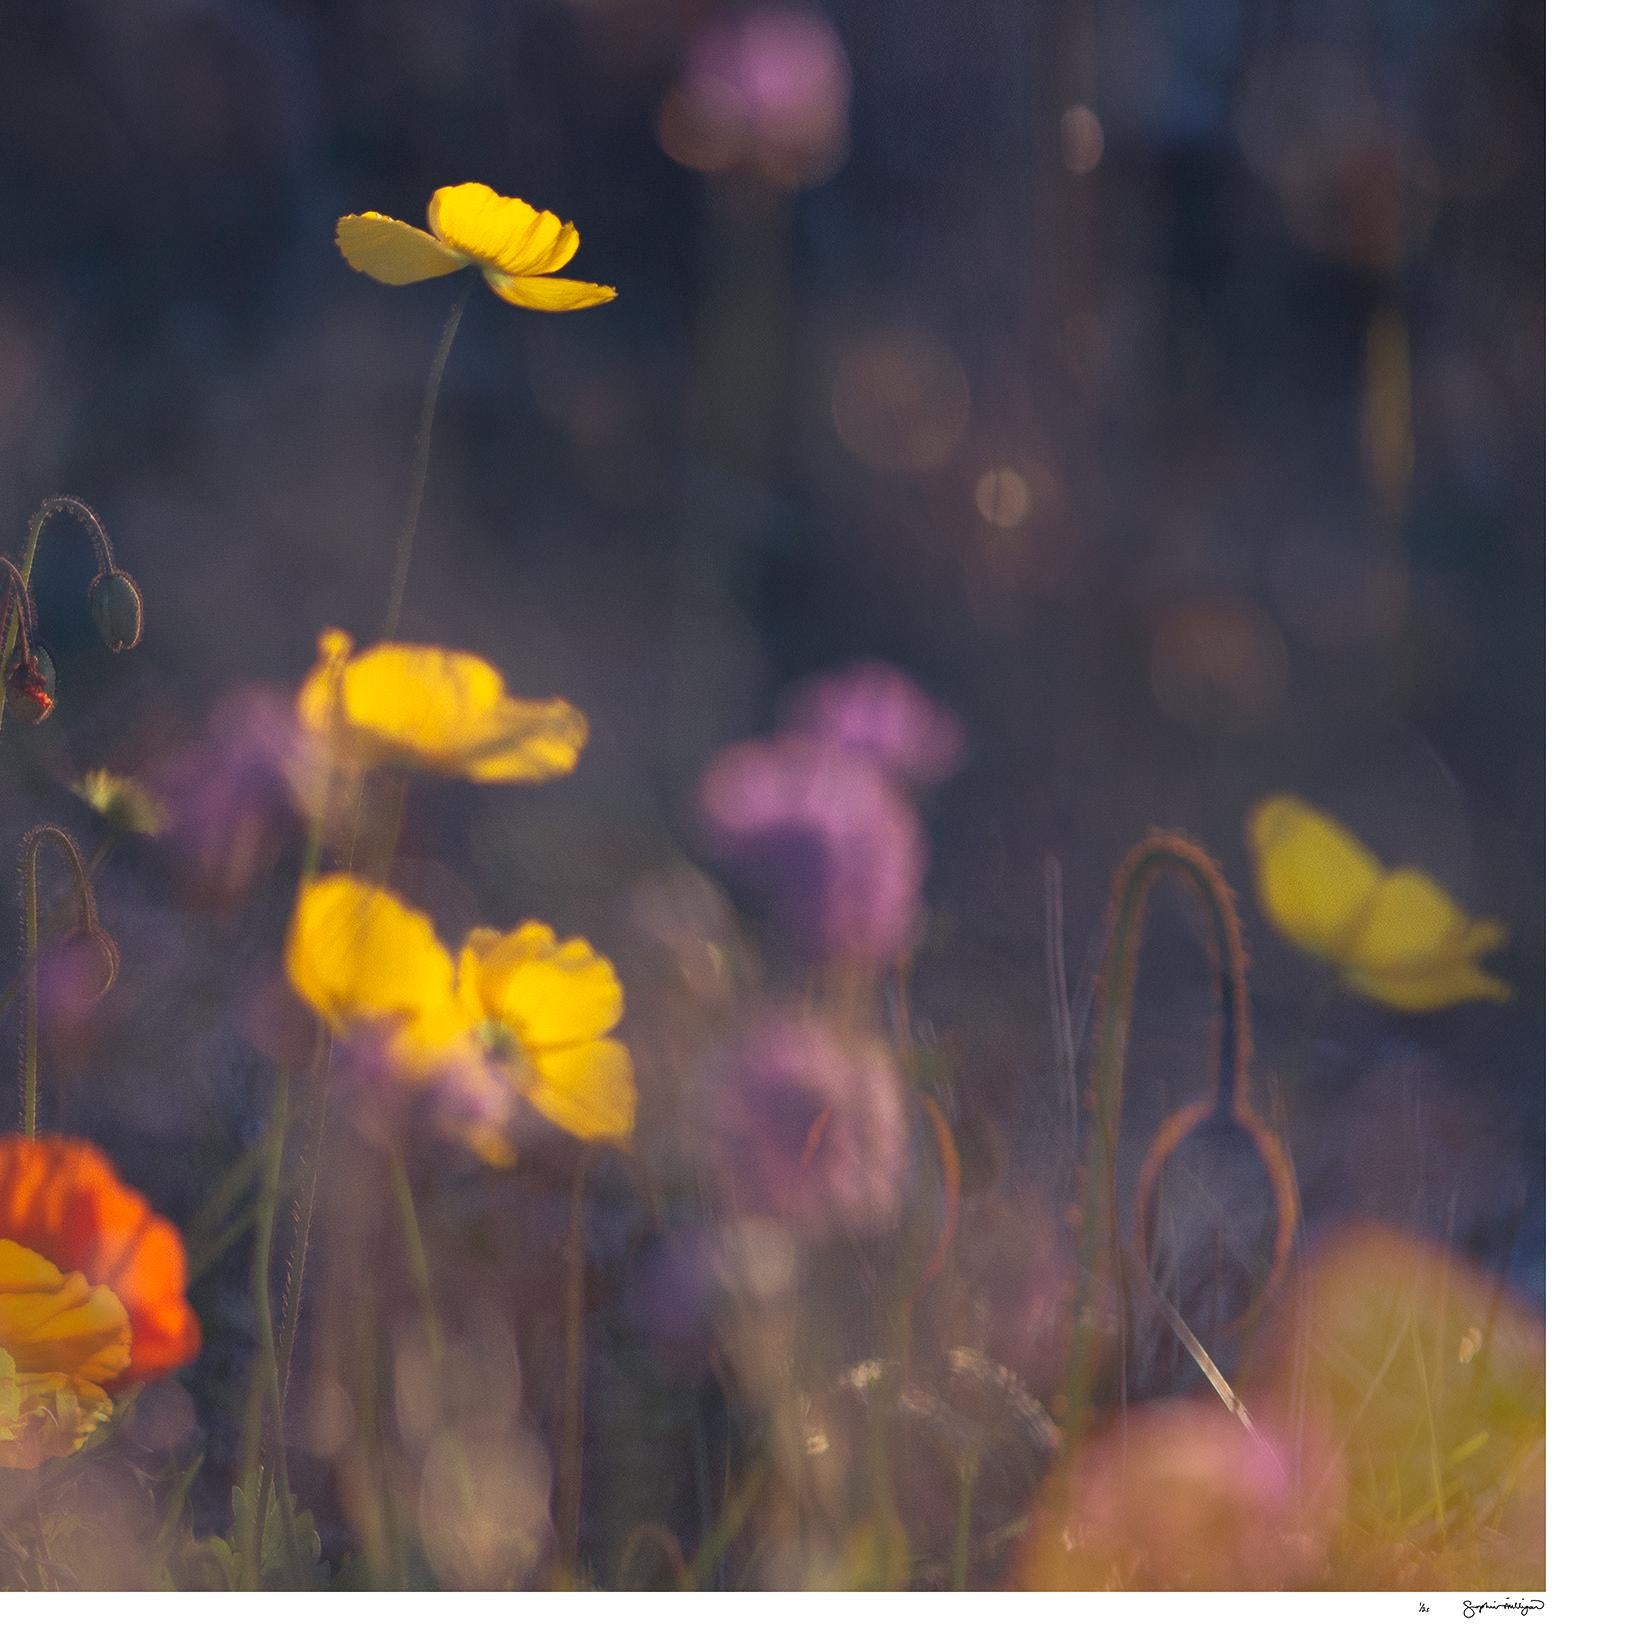 panorama de la nature sauvage en édition limitée 15 x 30 pouces « Evening Poppies » - Contemporain Photograph par Sophia Milligan